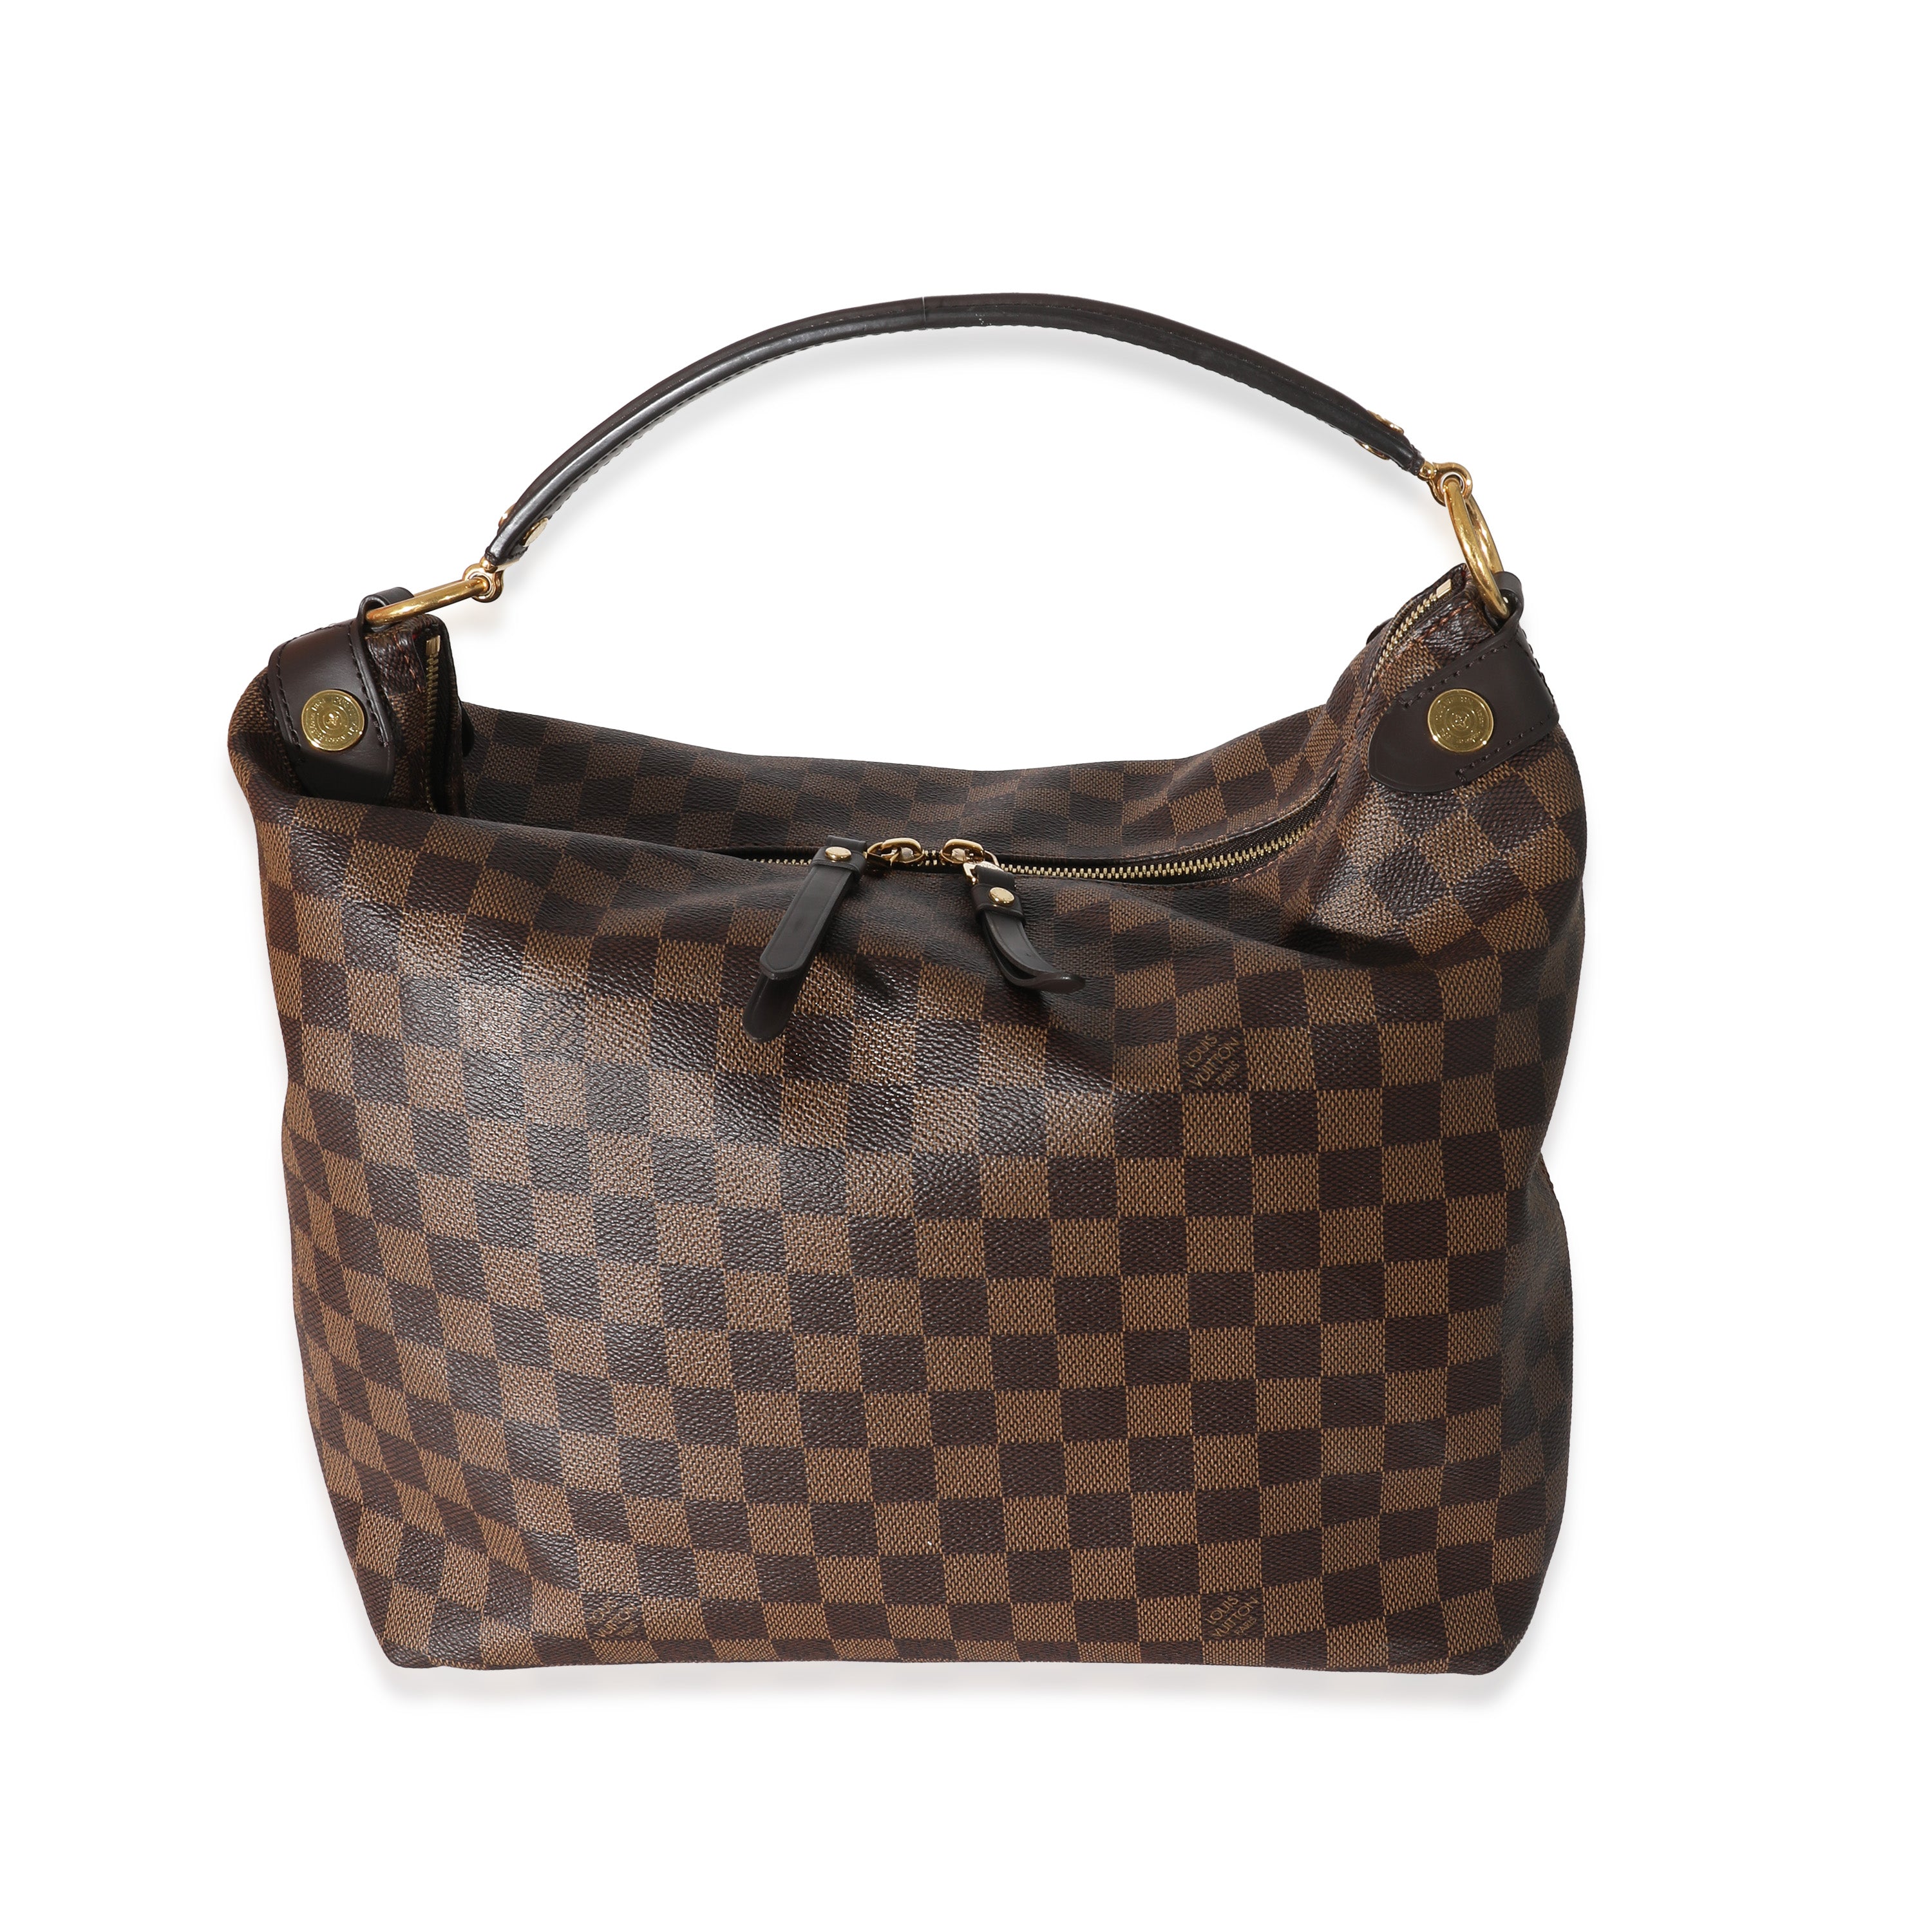 A leather Duomo Damier Ebene Canvas handbag by Louis Vuitton